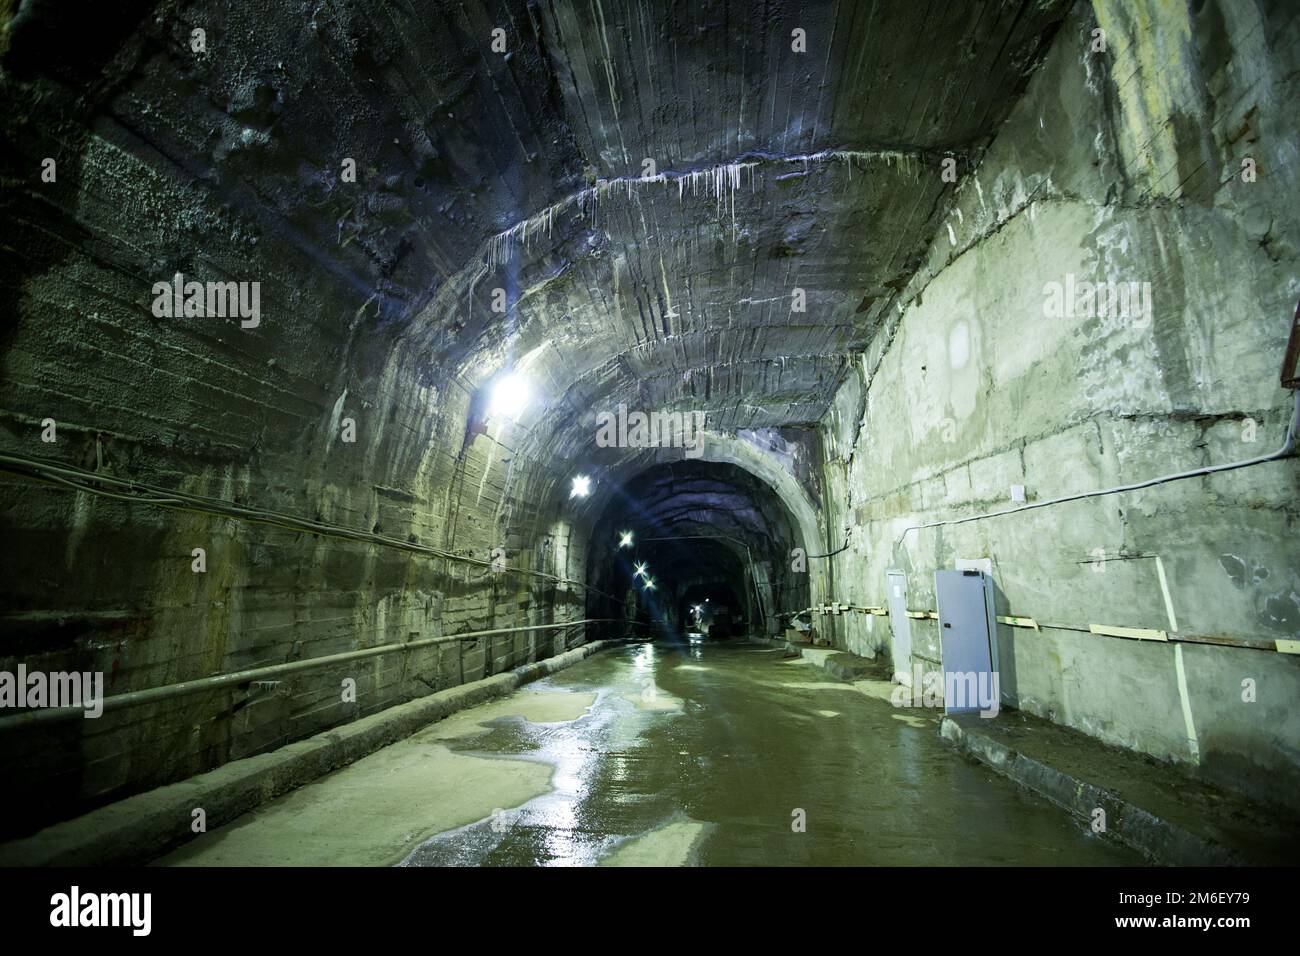 Stazione idroelettrica di Kolyma. Passaggi sotterranei scavati nella roccia, sotto la grande piastra della centrale idroelettrica. Foto Stock